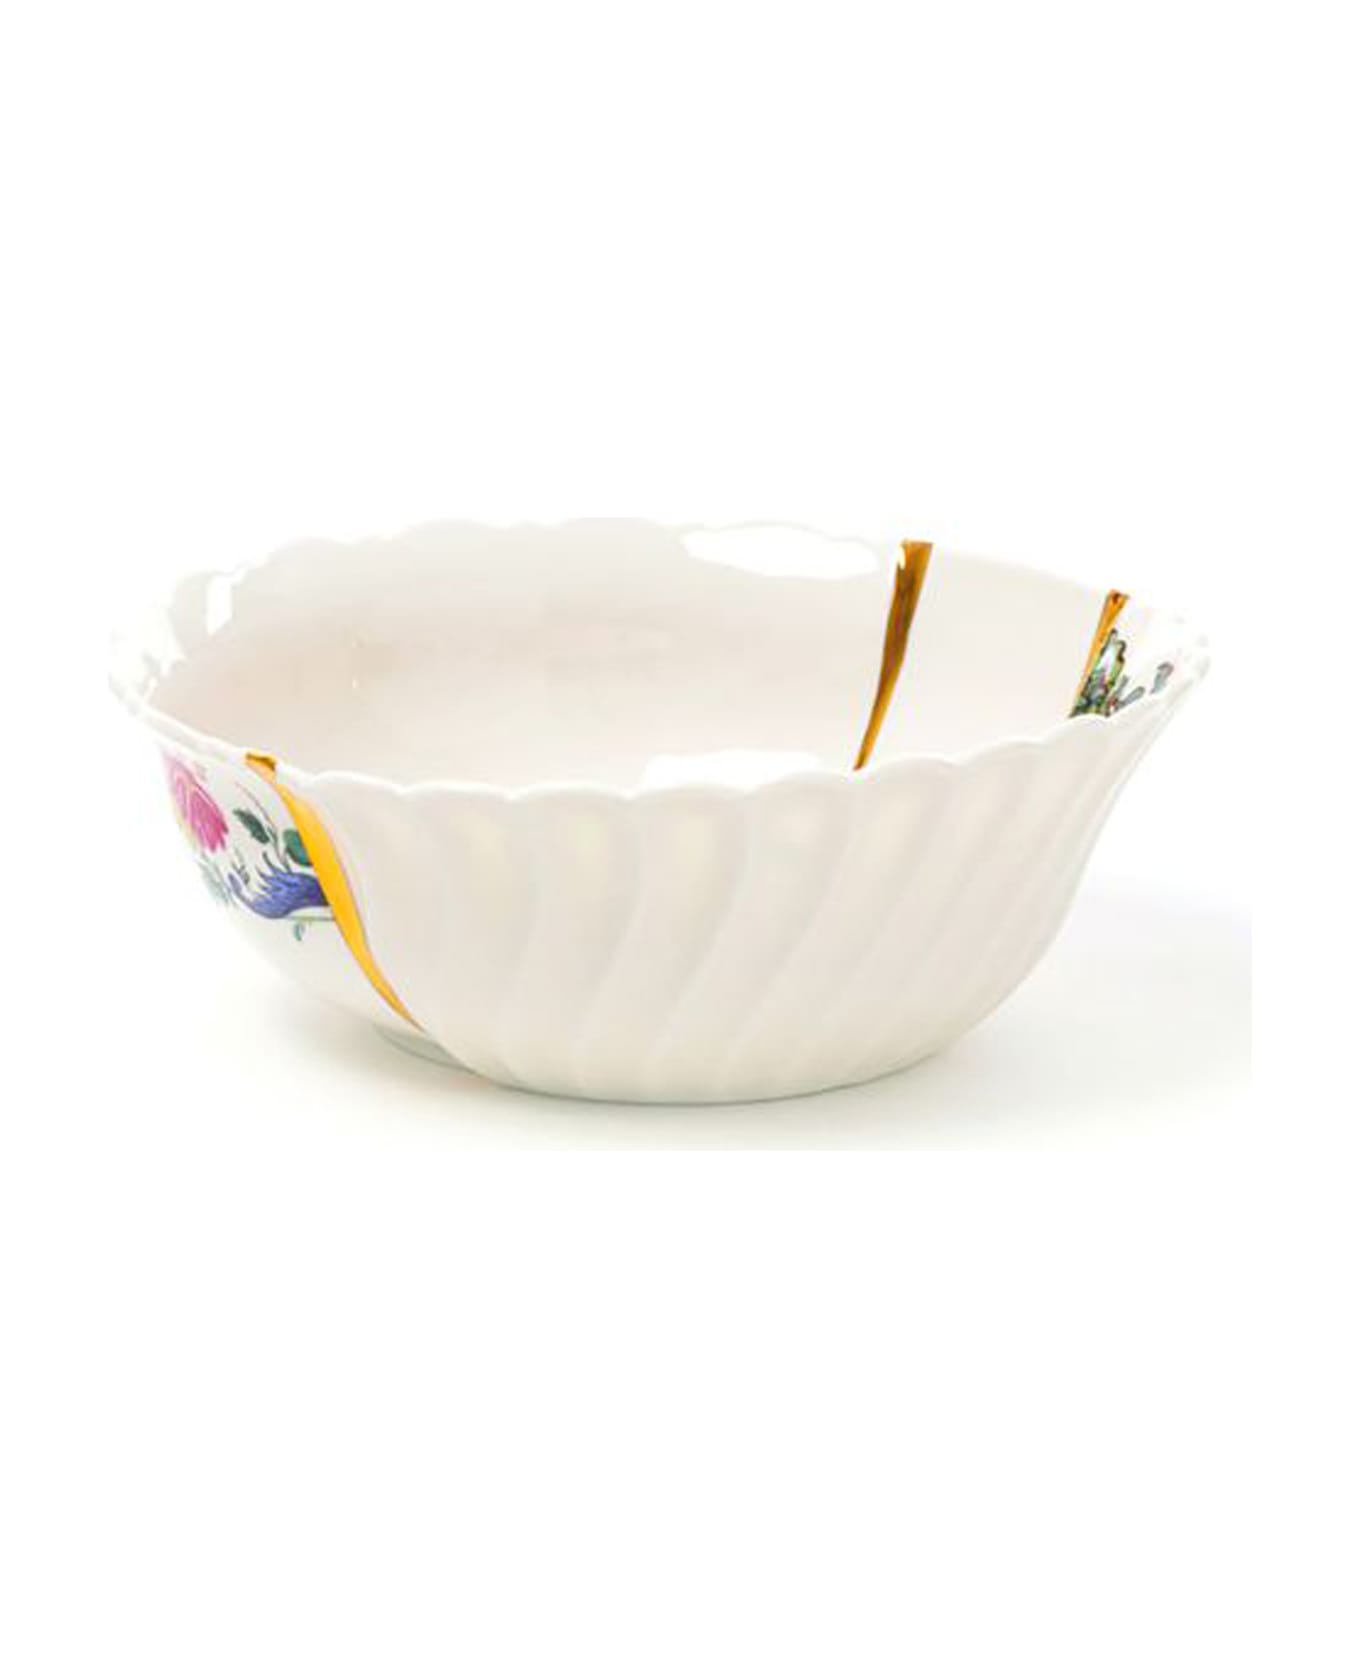 Seletti 'kintsugi' Large Bowl - Multicolor